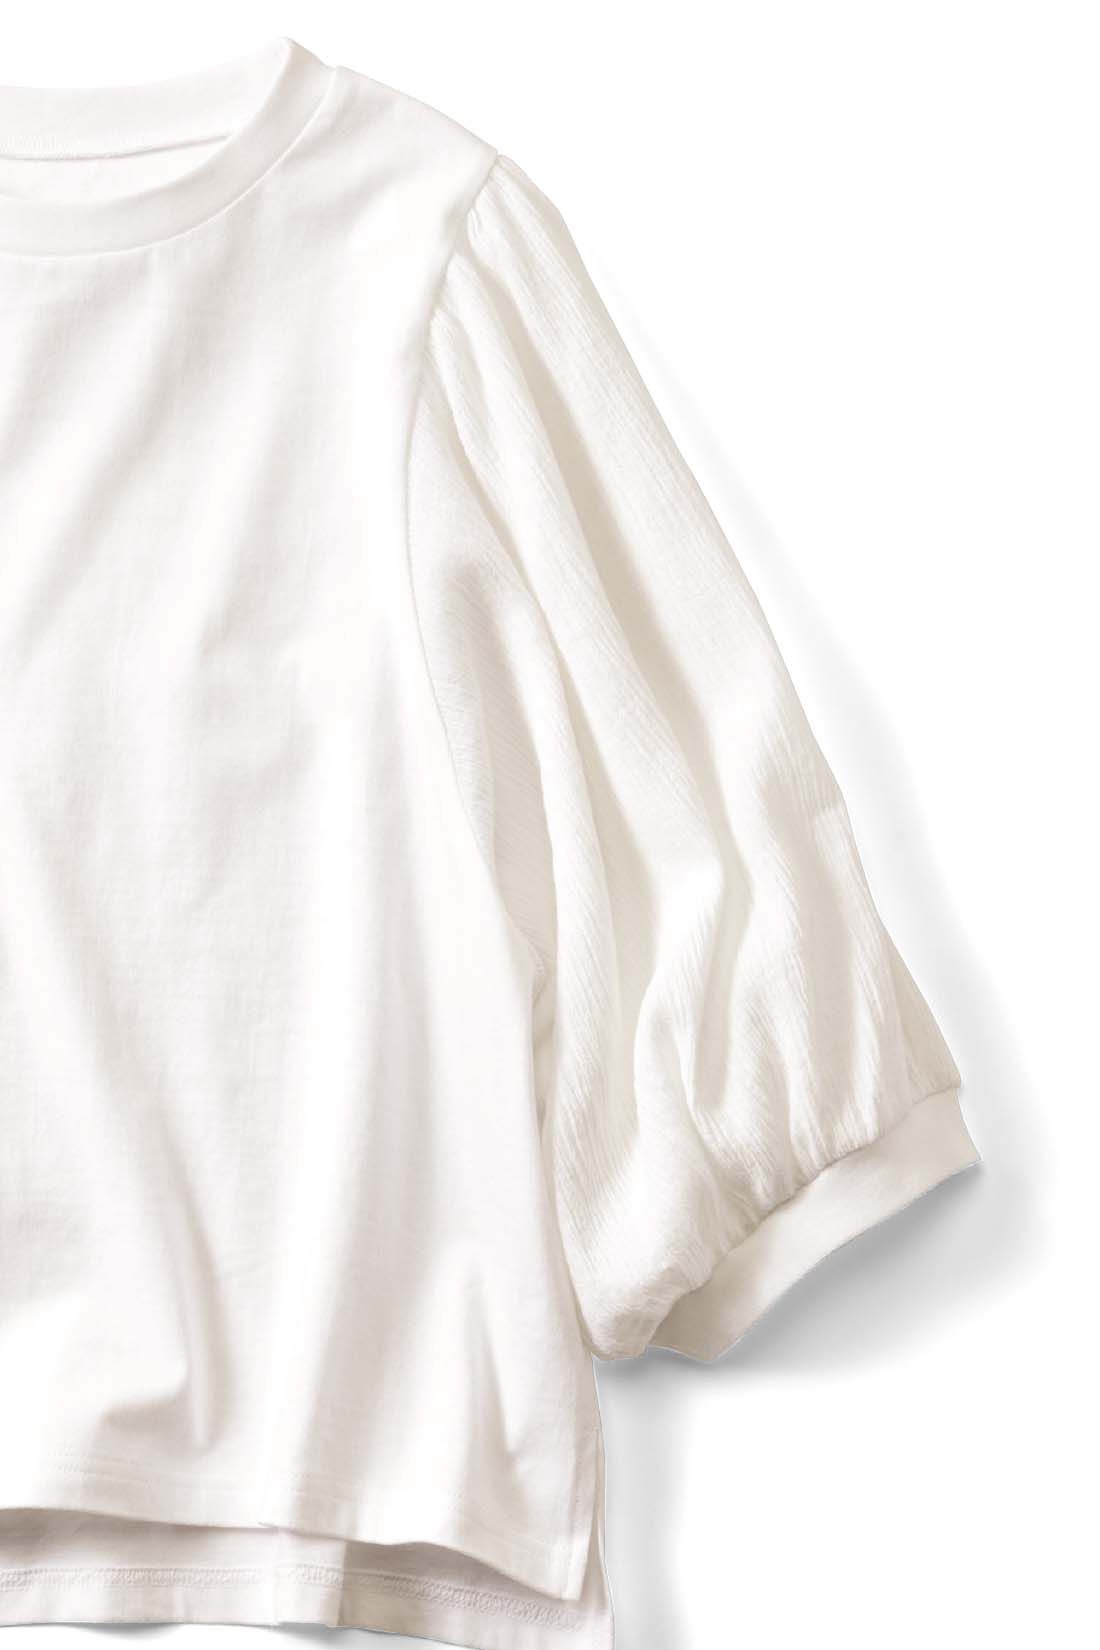 Live in  comfort|Live love cottonプロジェクト　リブ イン コンフォート　はまじとコラボ 袖ふんわりオーガニックコットンブラウスTシャツ〈ホワイト〉|二の腕が気にならない袖丈。アームホールが広いのでわきも涼しく快適♪